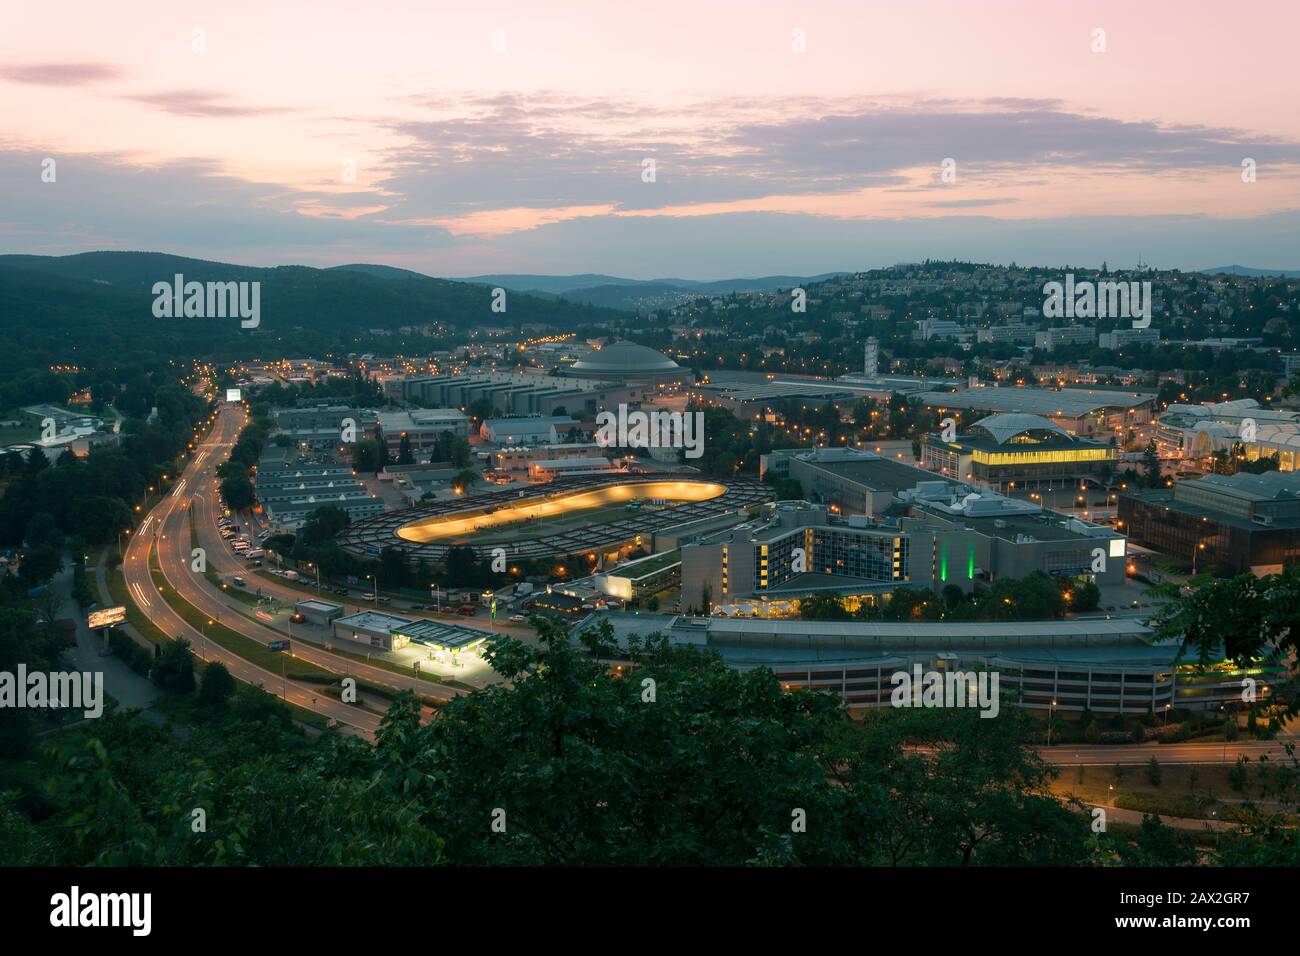 Leuchtende Dämmerung Brno Abend. Ausstellungszentrum, Velodrom, Straßenlaternen und Gebäude am frühen Abend des Sommers Foto von oben. Stockfoto